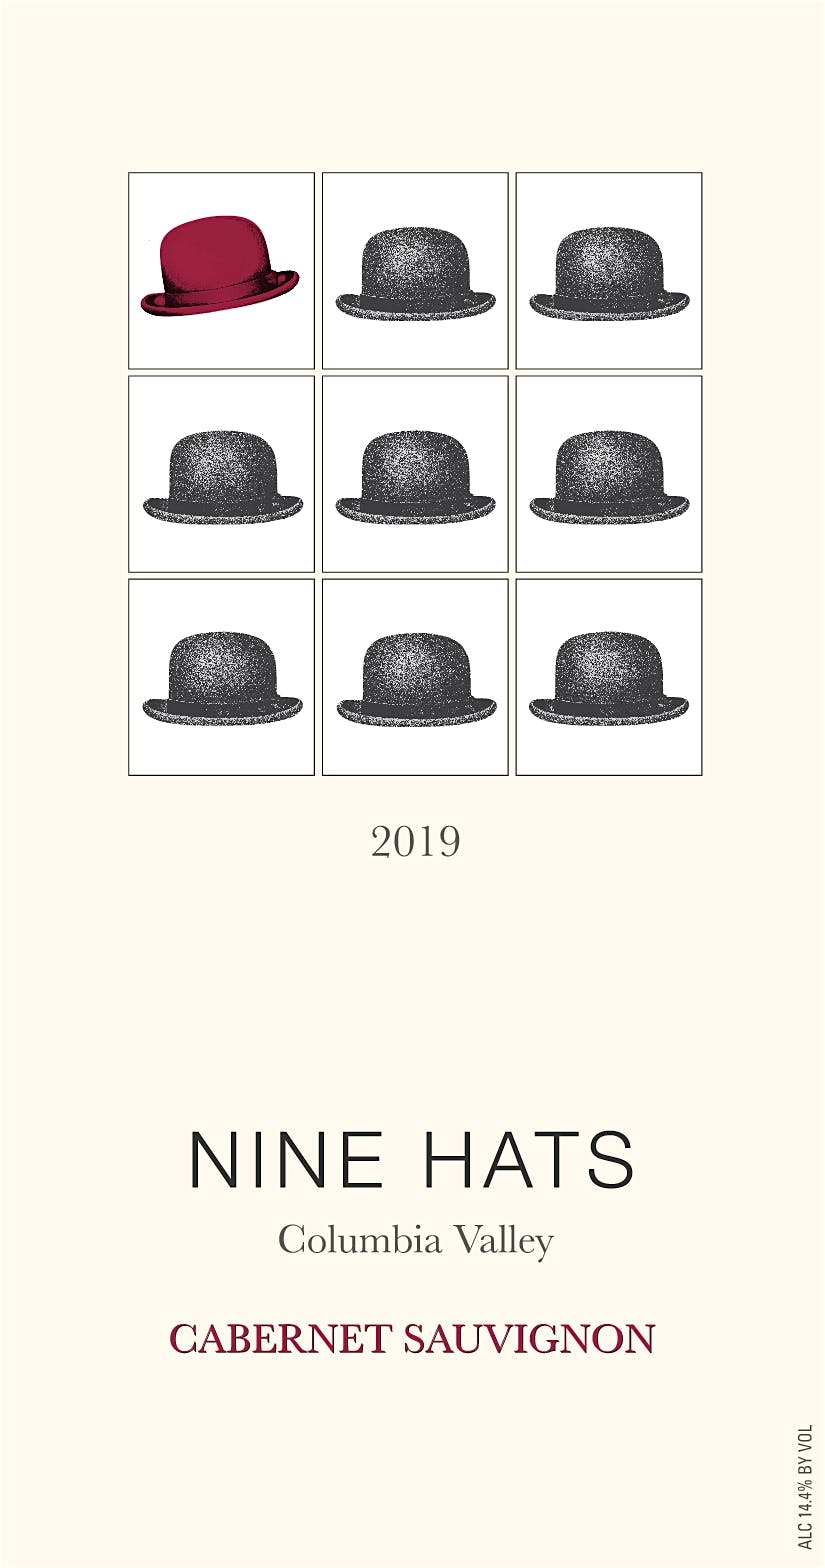 Label for Nine Hats